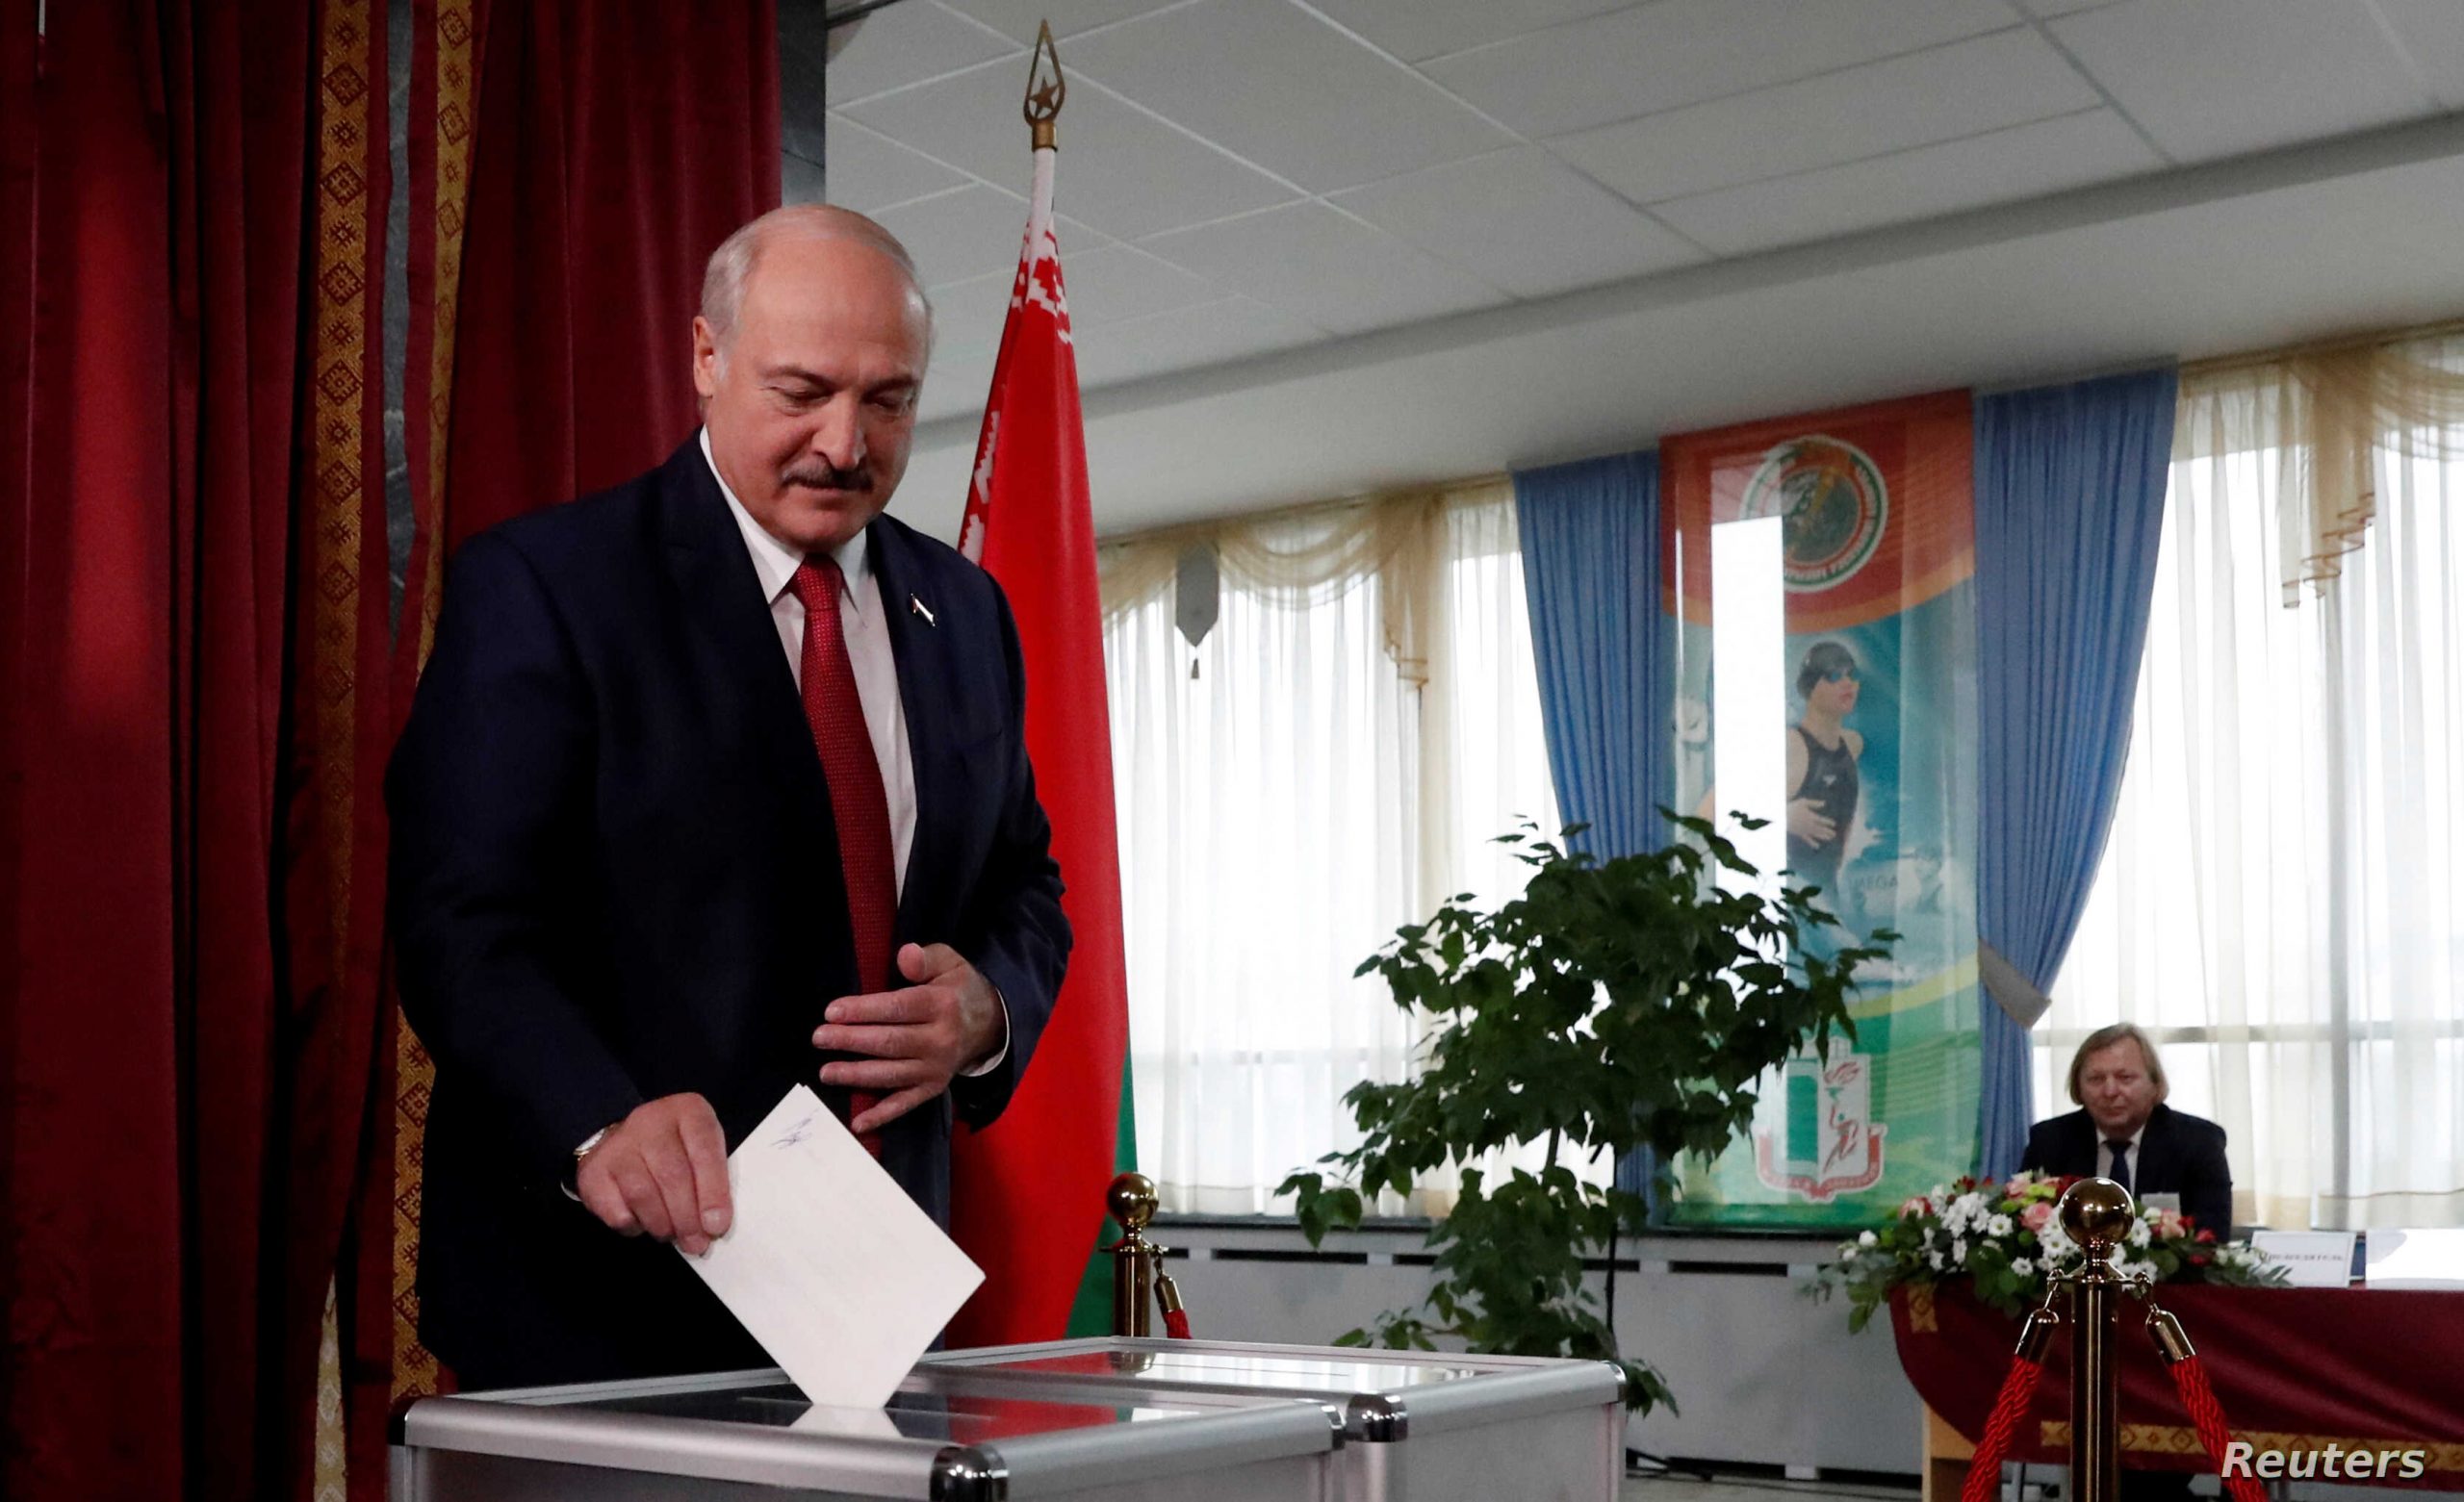 Ευθεία παρέμβαση των G7 στα εσωτερικά της Λευκορωσίας: Απαίτησαν νέες εκλογές!